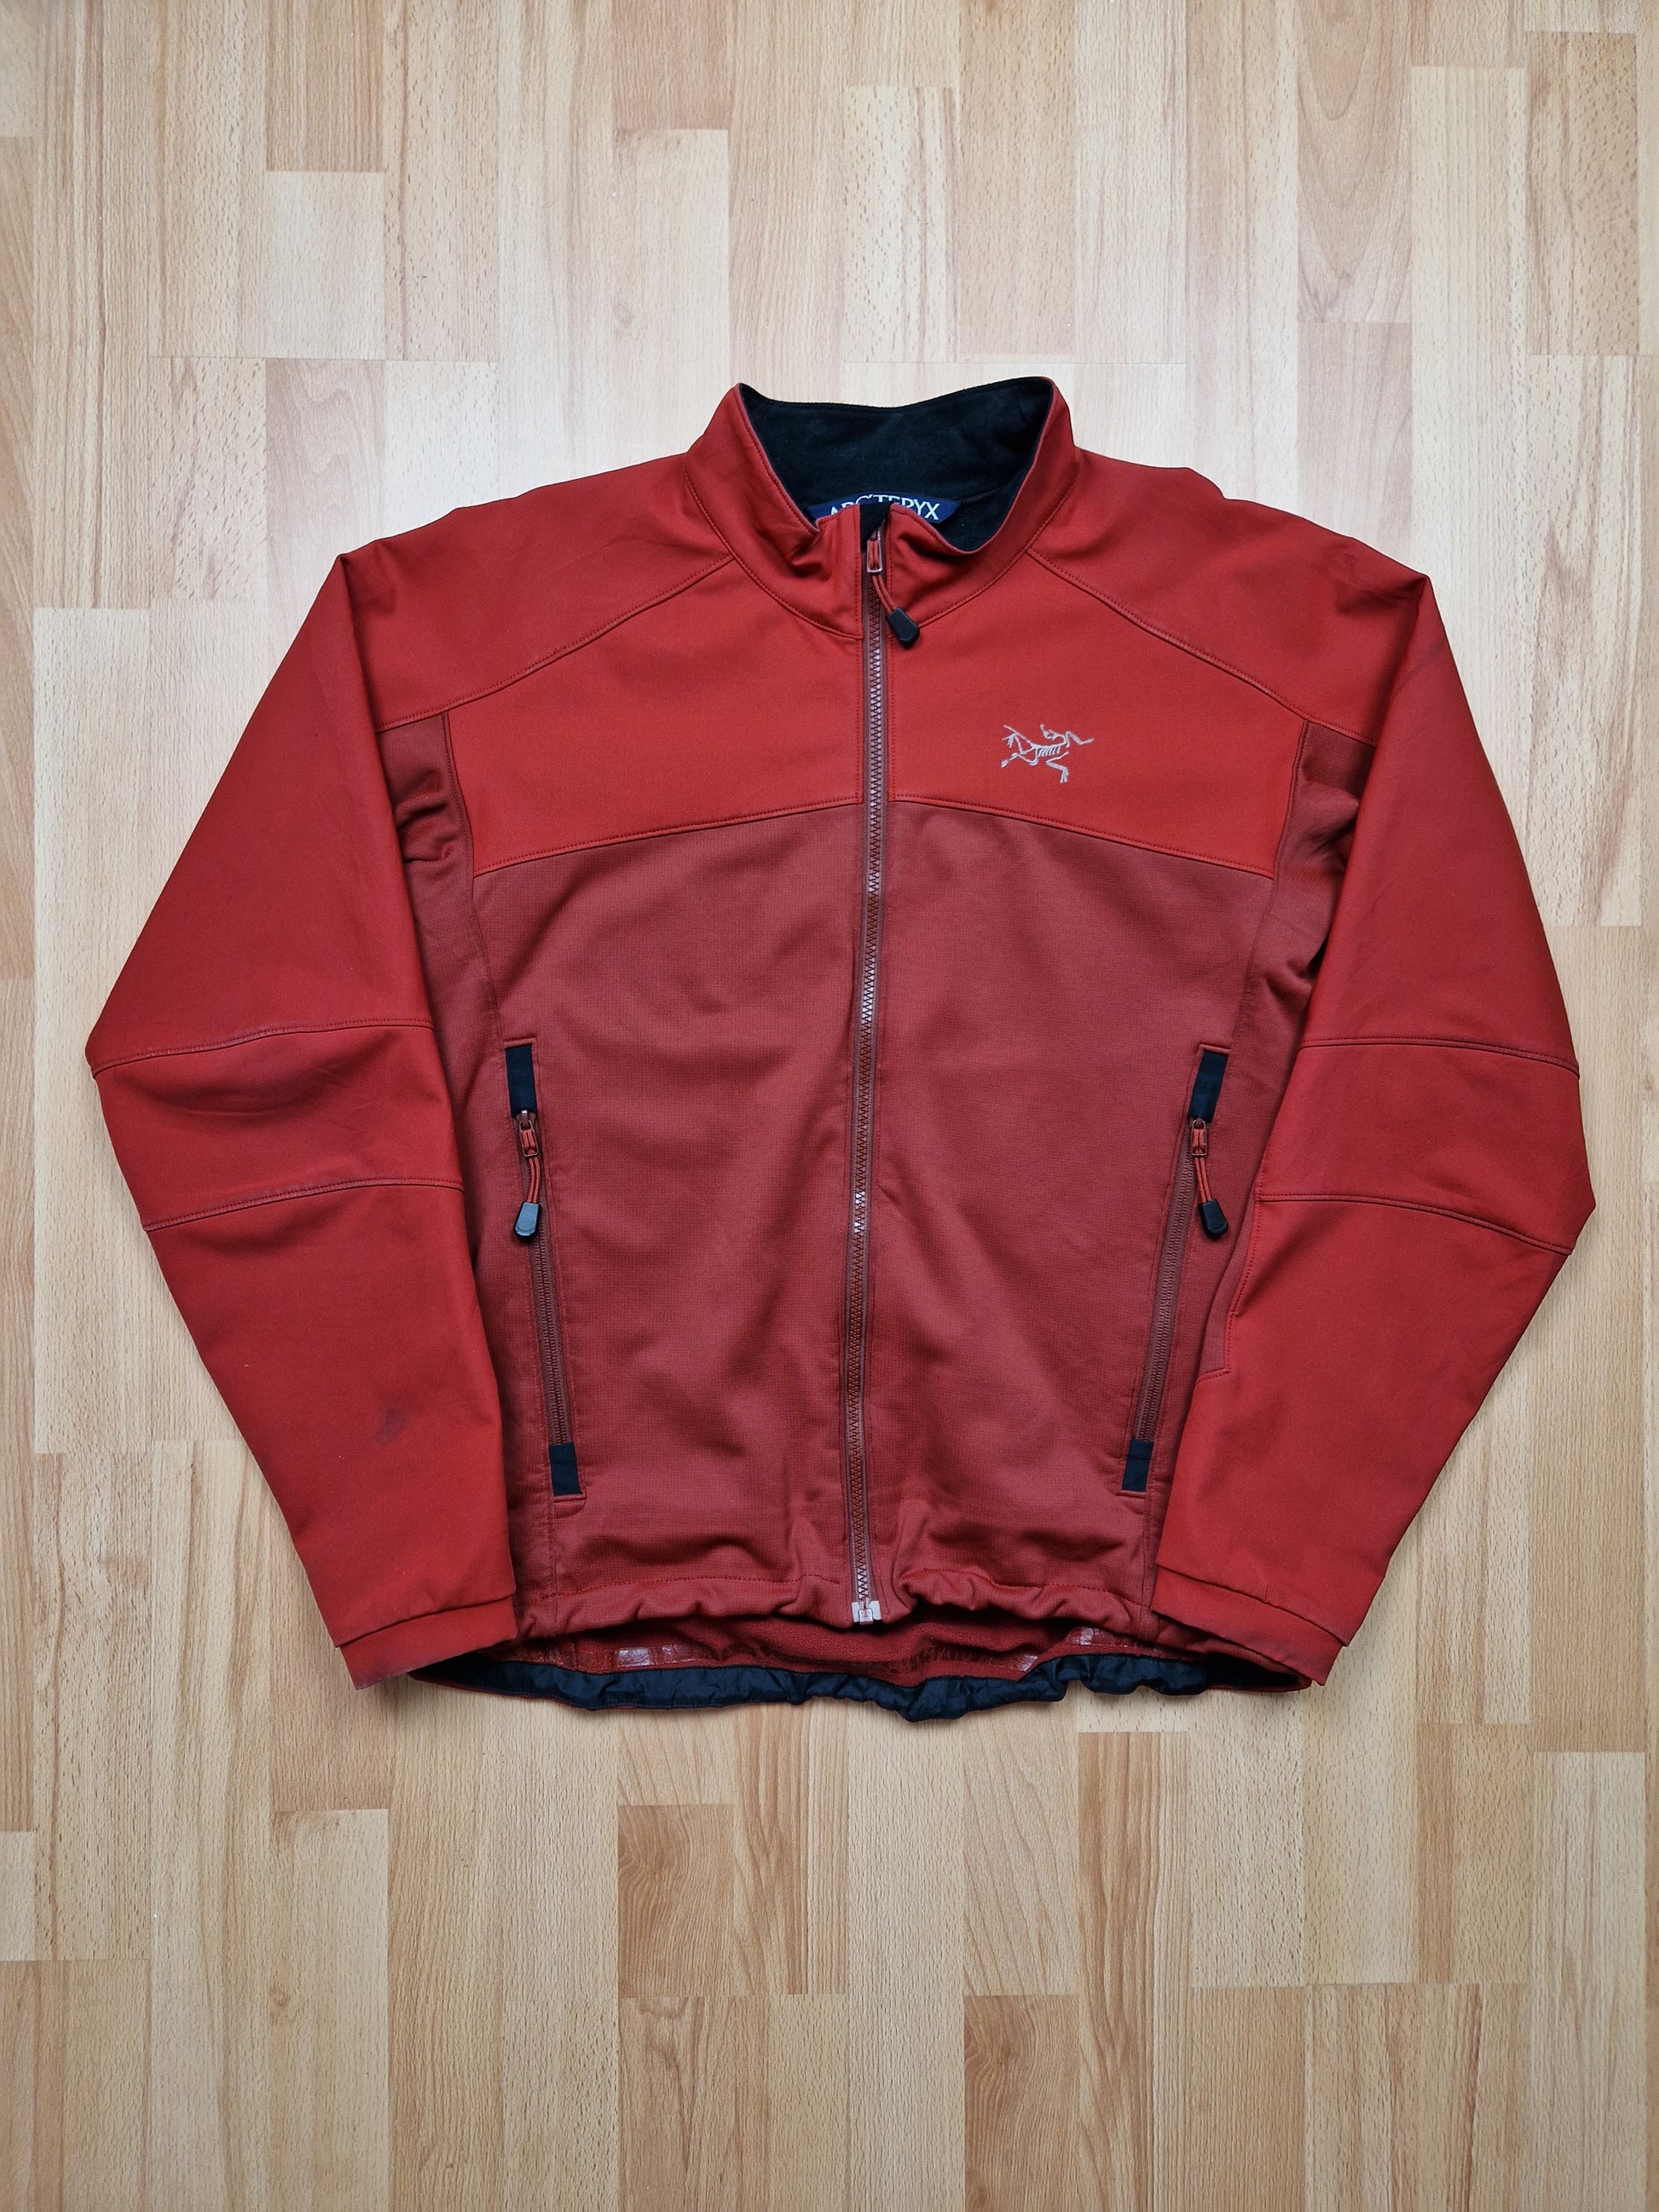 Vintage Arc'teryx Polartec Shell Jacket (M/L) – uniform.streetwear